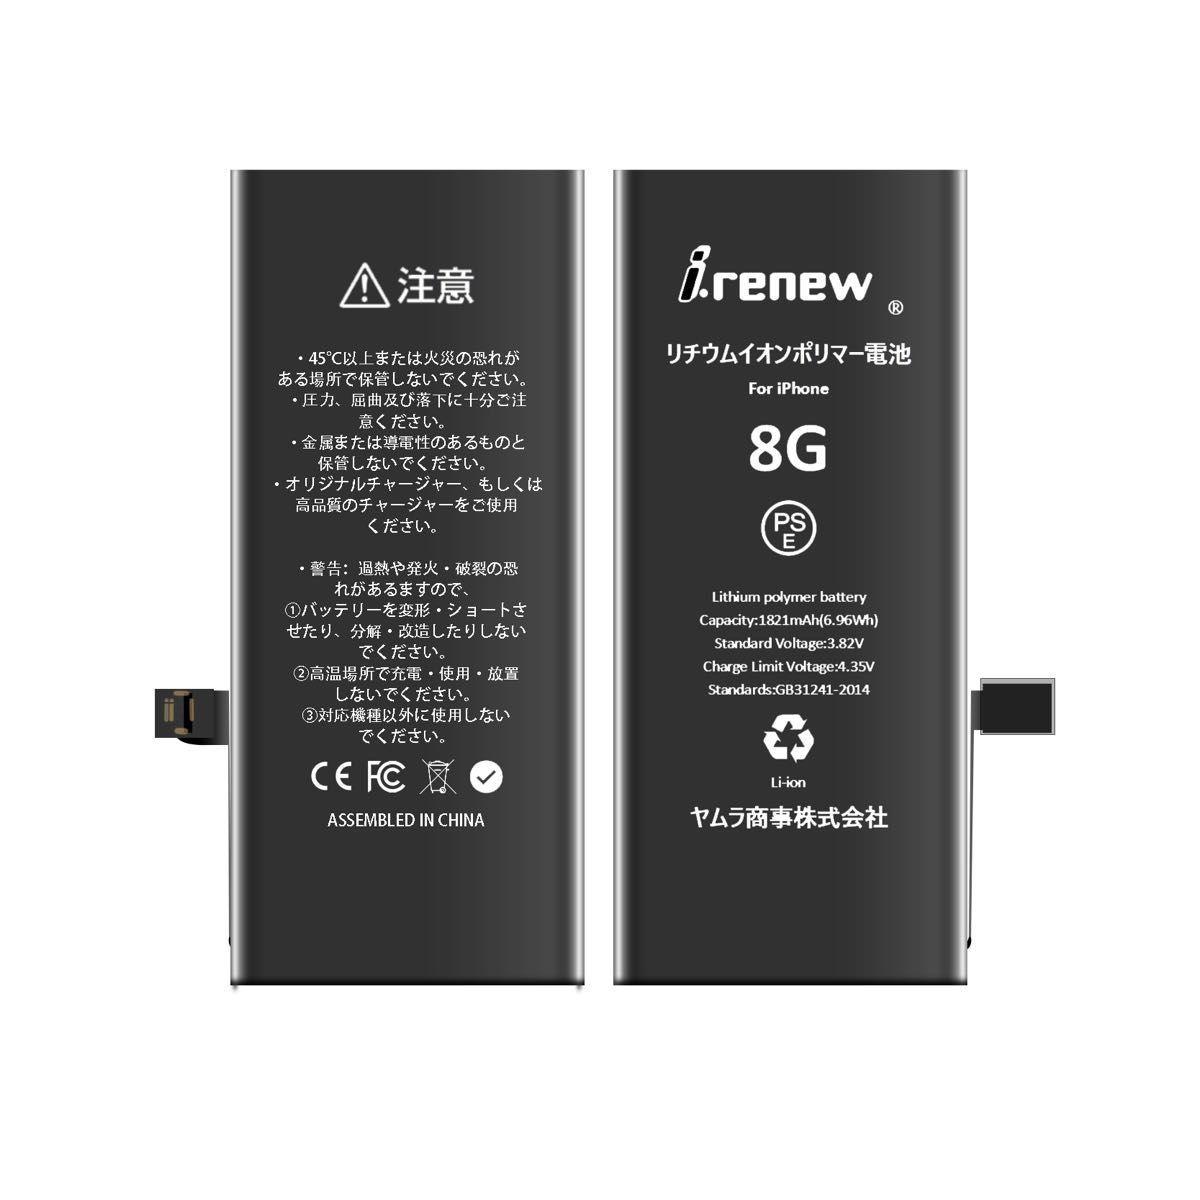 【新品】iPhone8 バッテリー 交換用 PSE認証済 工具・保証付